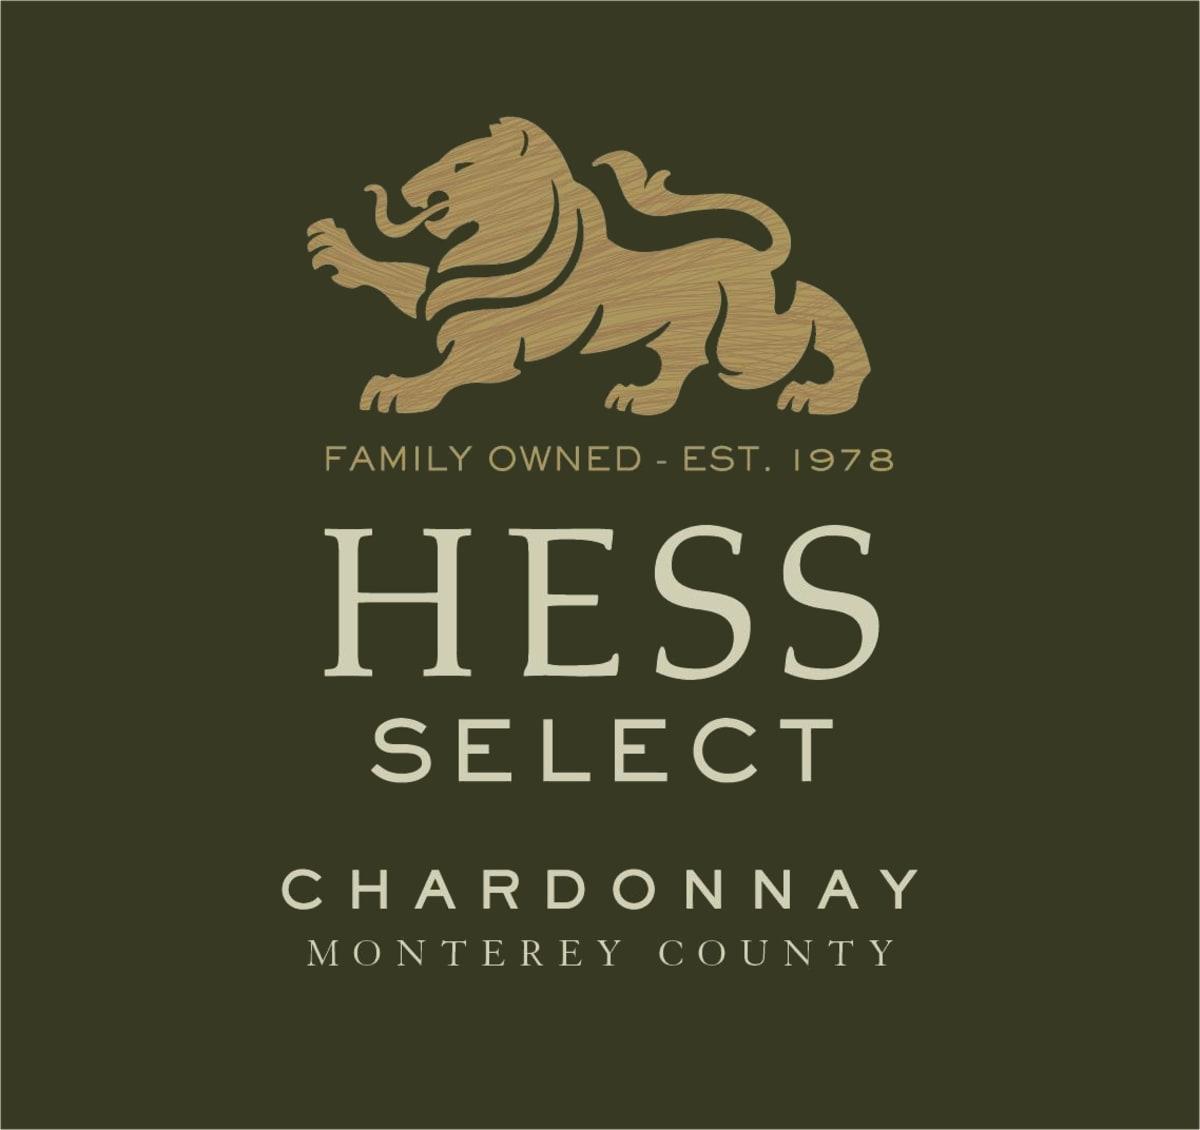 Hess Select Chardonnayjpg